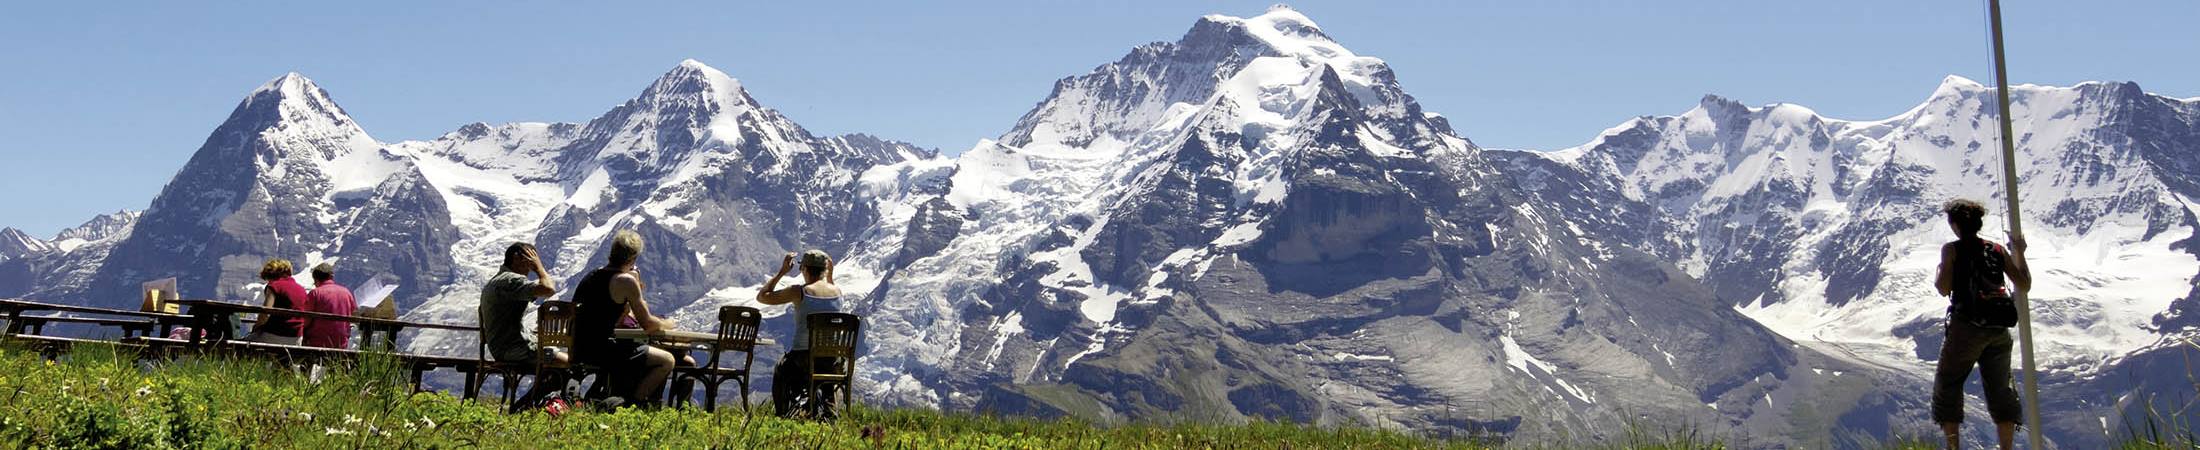 la región alpina del Jungfrau camping lazy rancho unterseen interlaken 